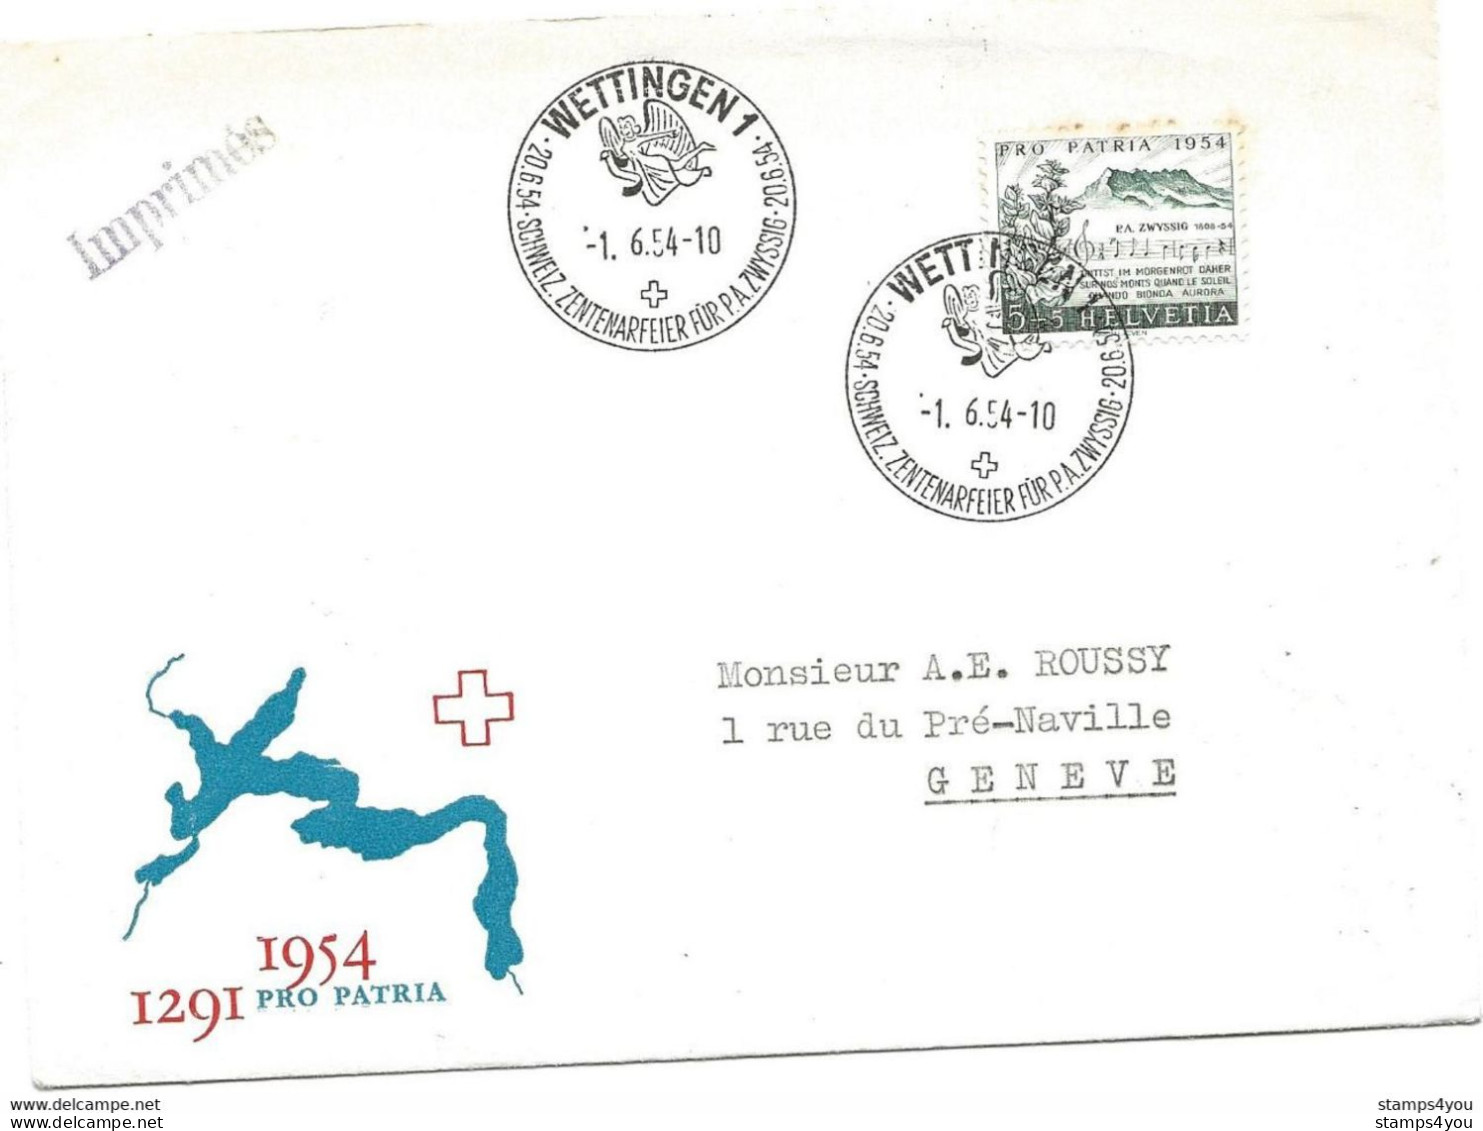 125 - 7 - Enveloppe Avec Oblit Spéciale "Wettingen Schweiz. Zenterarfeier Für PA Zwyssig 1954" - Marcophilie